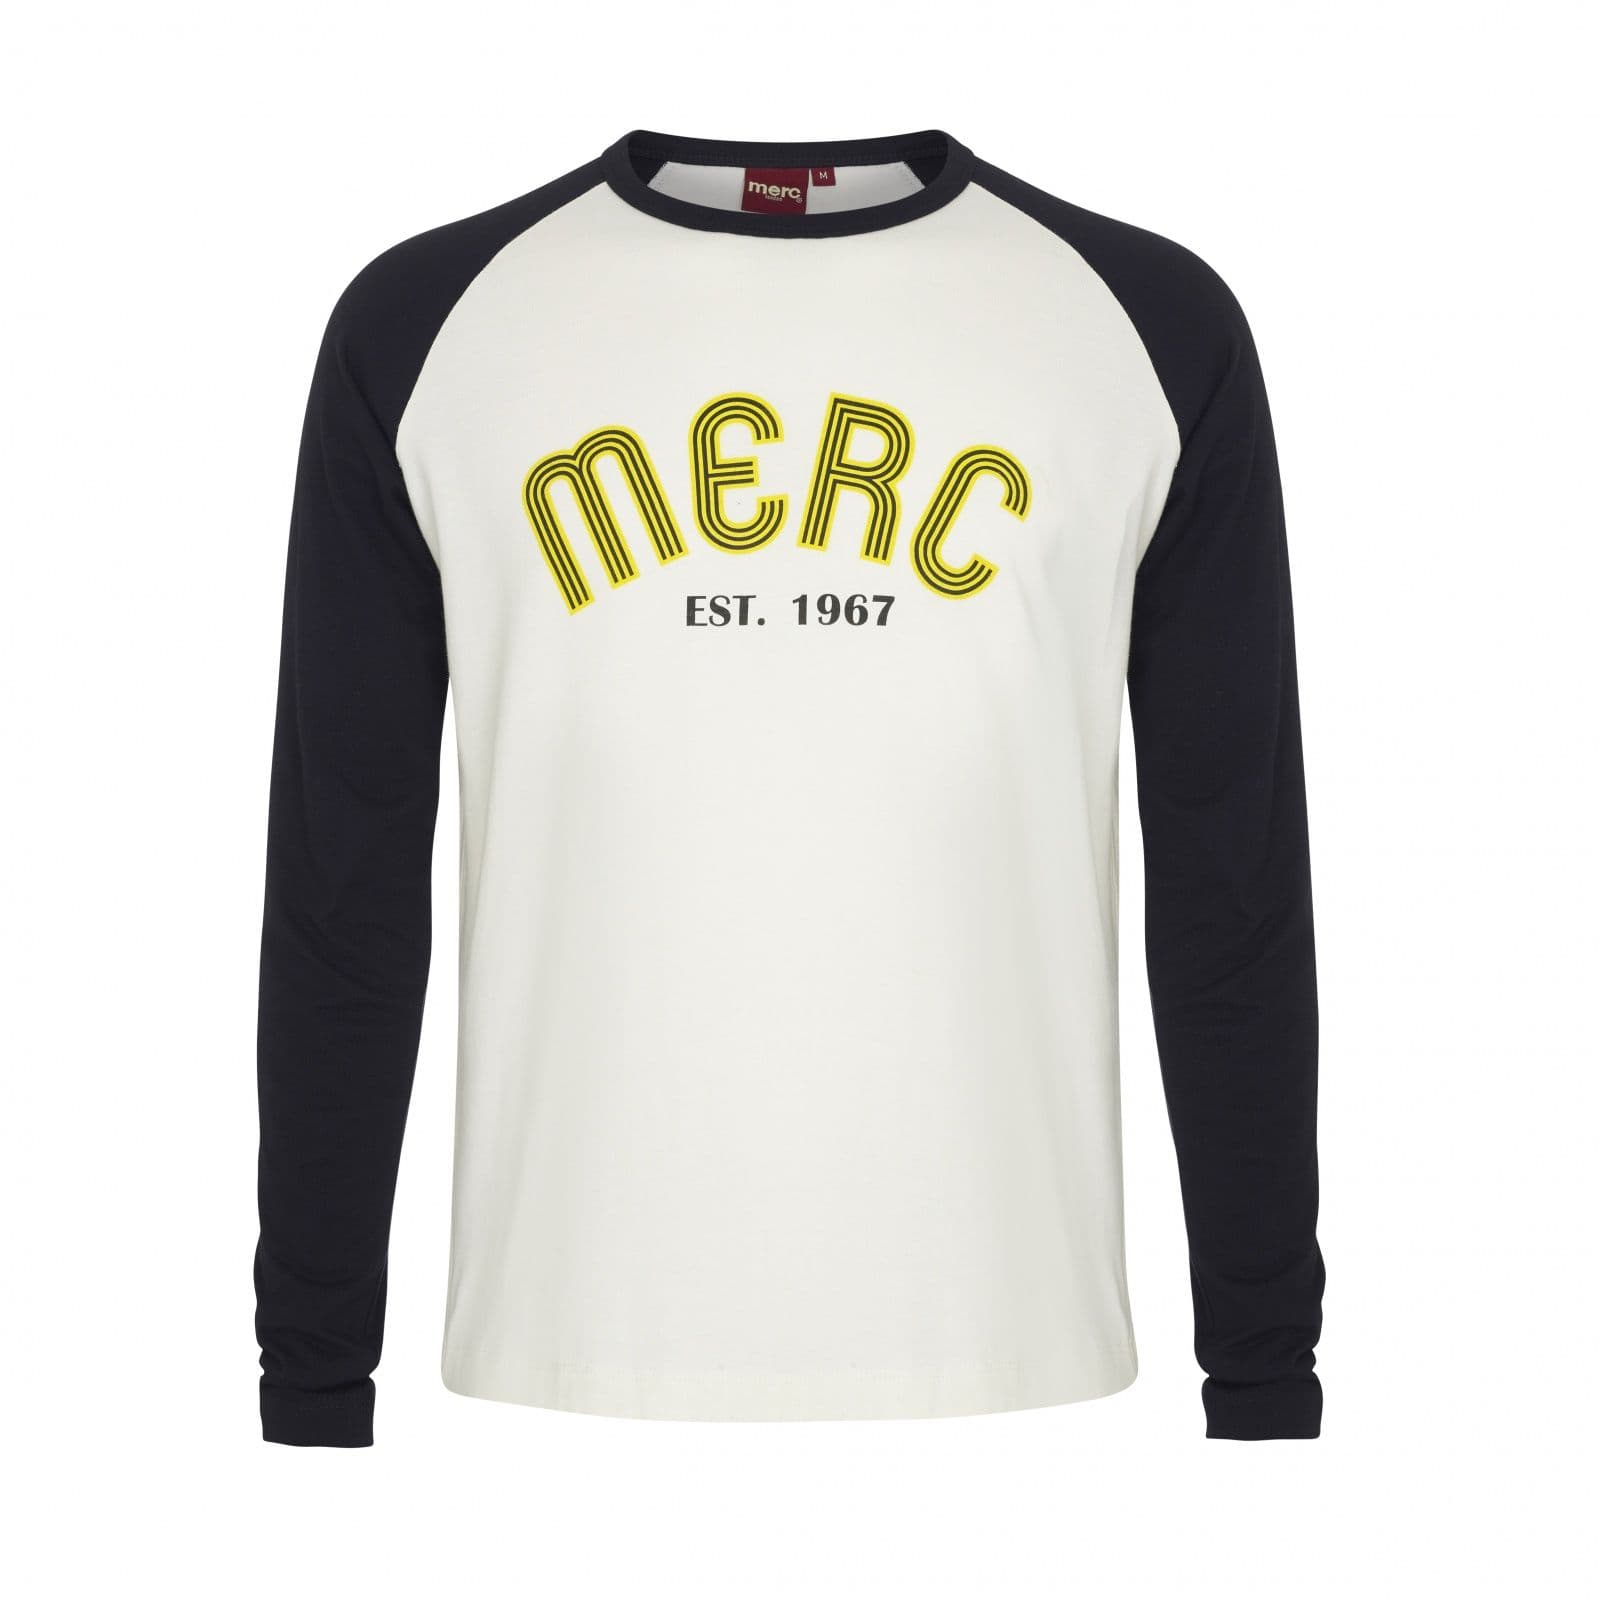 Мужская олдскульная футболка лонгслив Fairdene молочного цвета с длинным рукавом из хлопка - купить под заказ по АКЦИИ в интернет магазине MERC! Цена на сайте